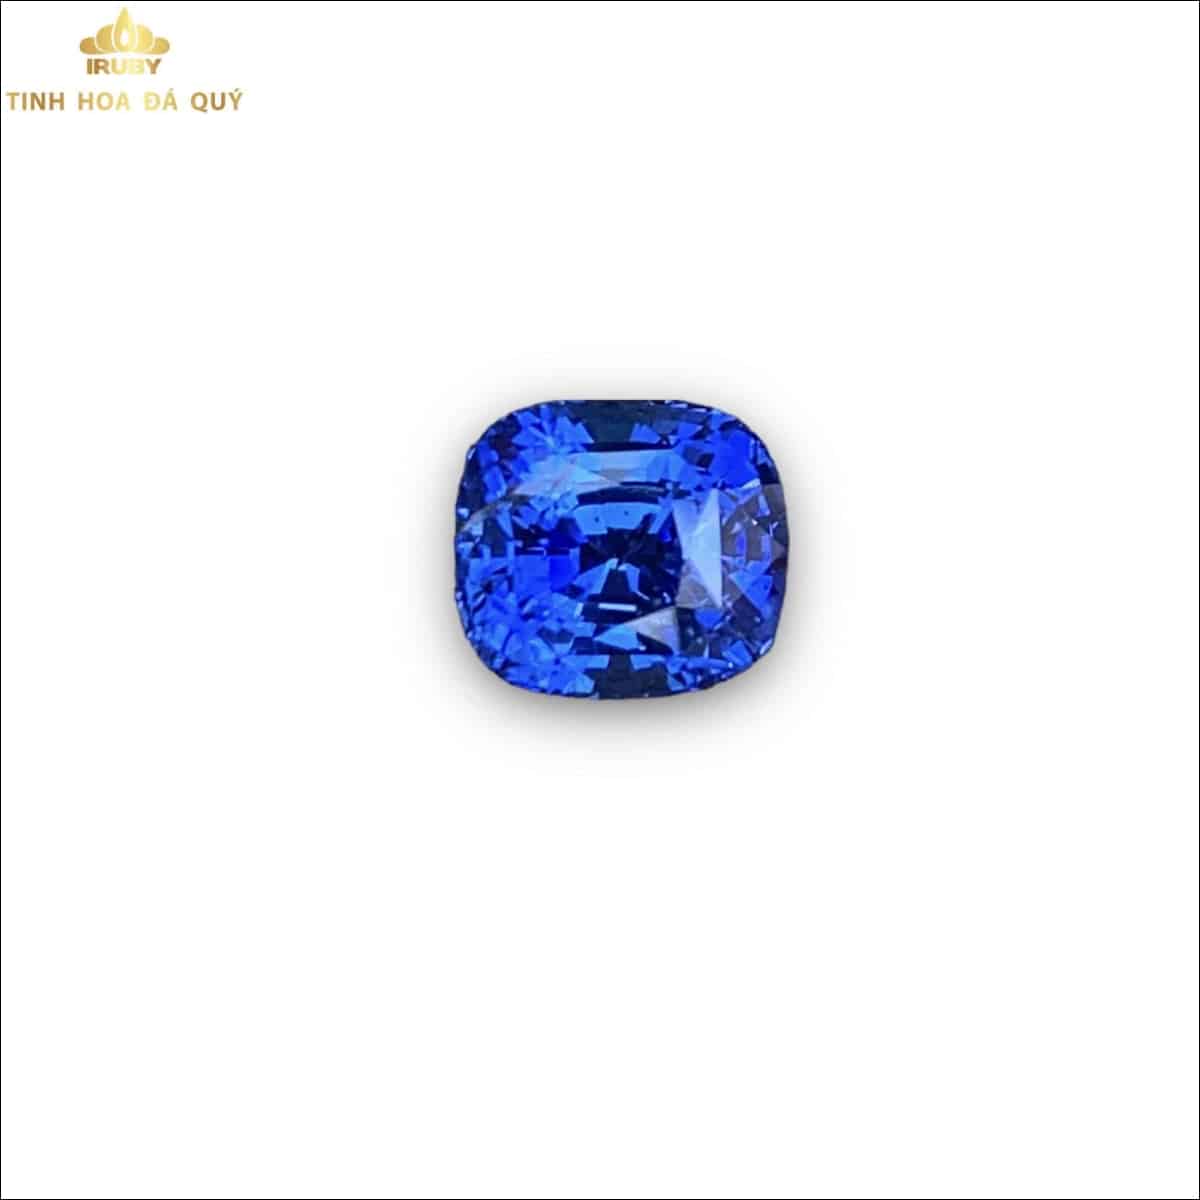 Viên Sapphire xanh lam sáng cornflower 3,05ct - IRSP 2212305